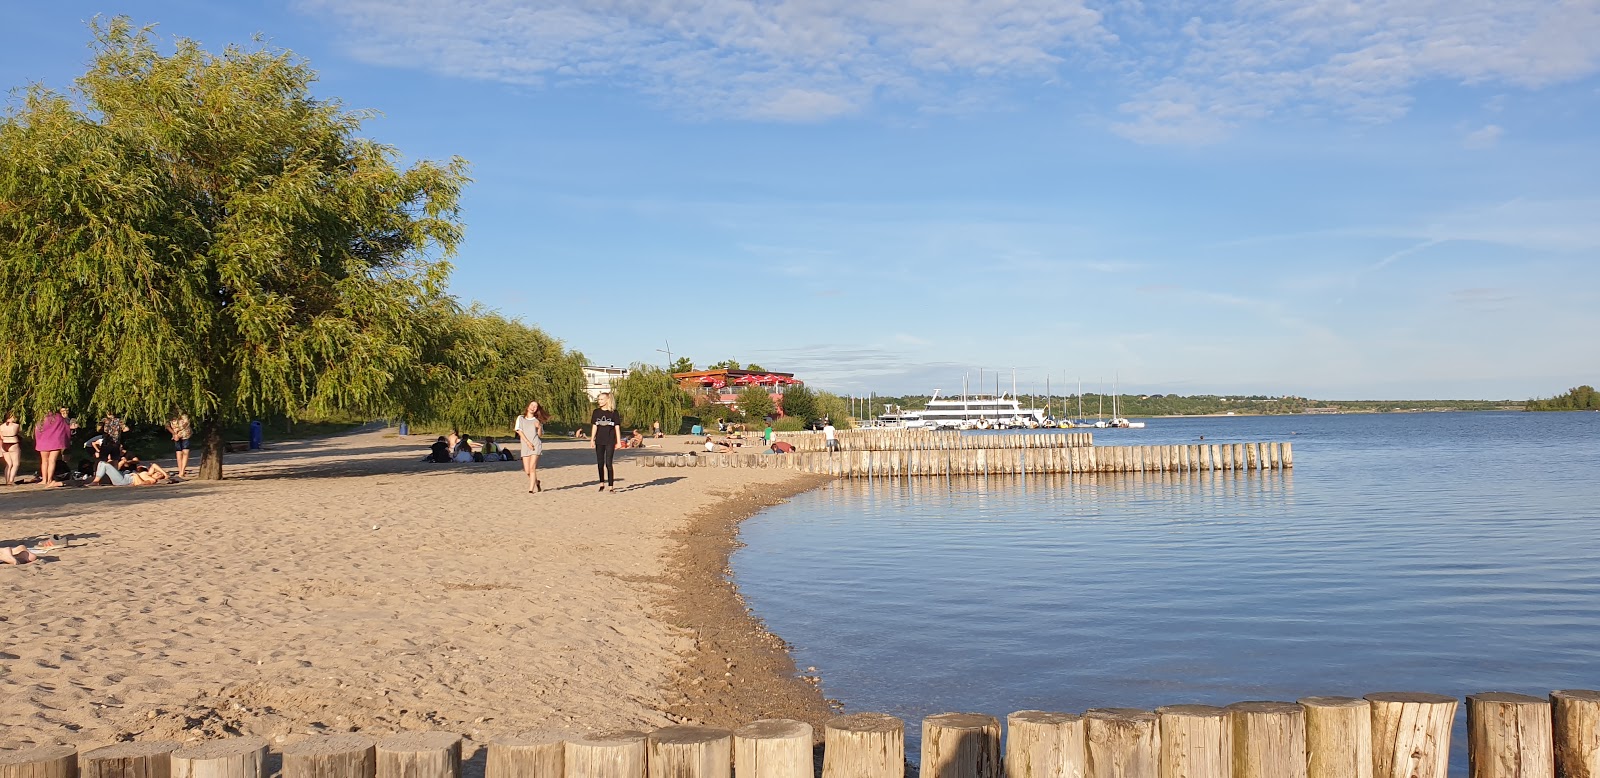 Foto av Markkleeberger See Strandbad med rak strand